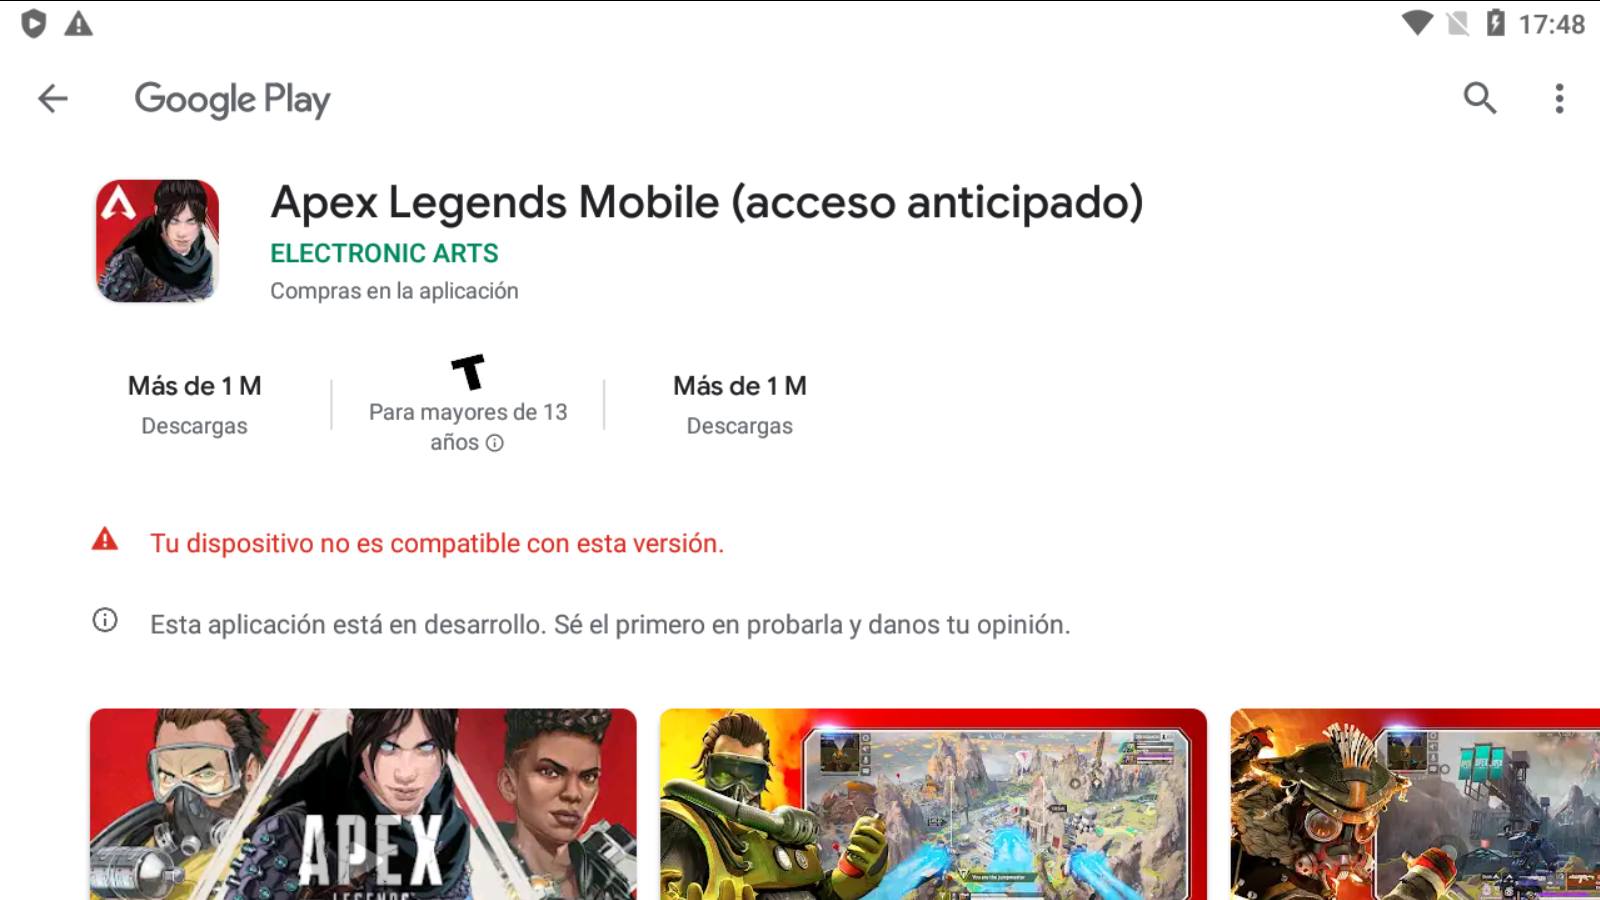 ¿Cómo resolver el problema de ¨Tu dispositivo no es compatible con esta versión”de Apex Legends Mobile en Play Store?